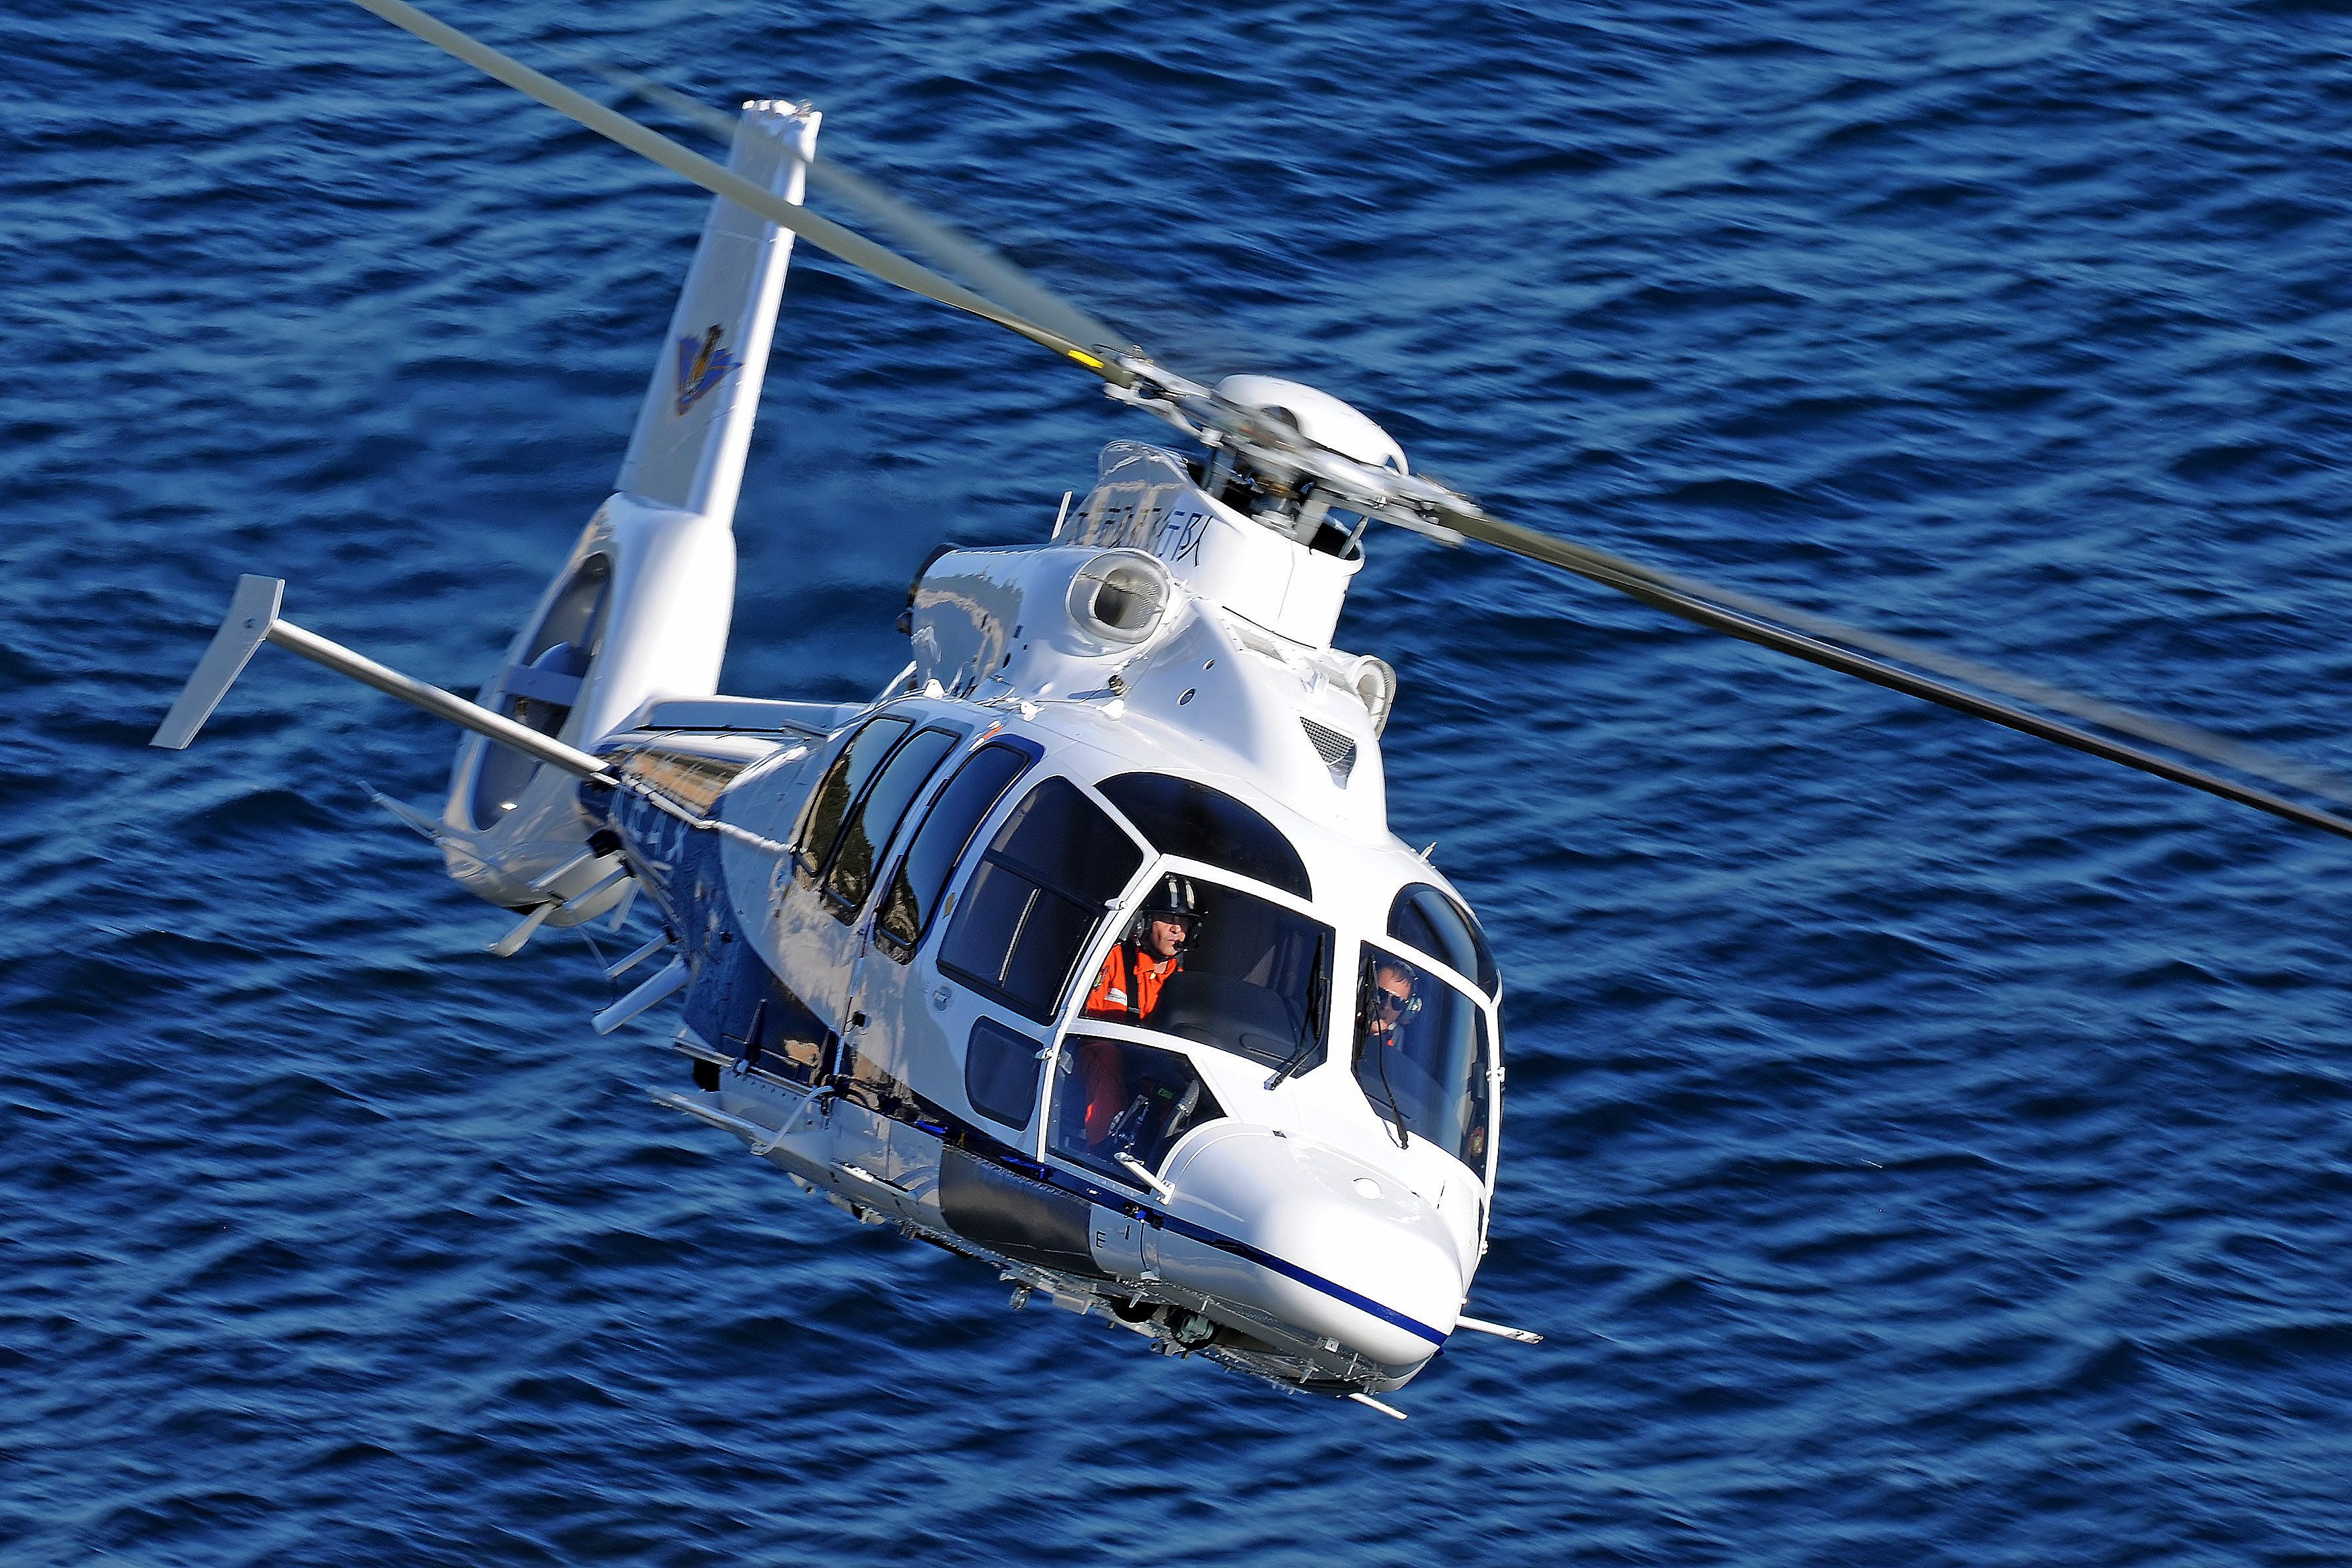 empty leg charter helicoptero eurocopter